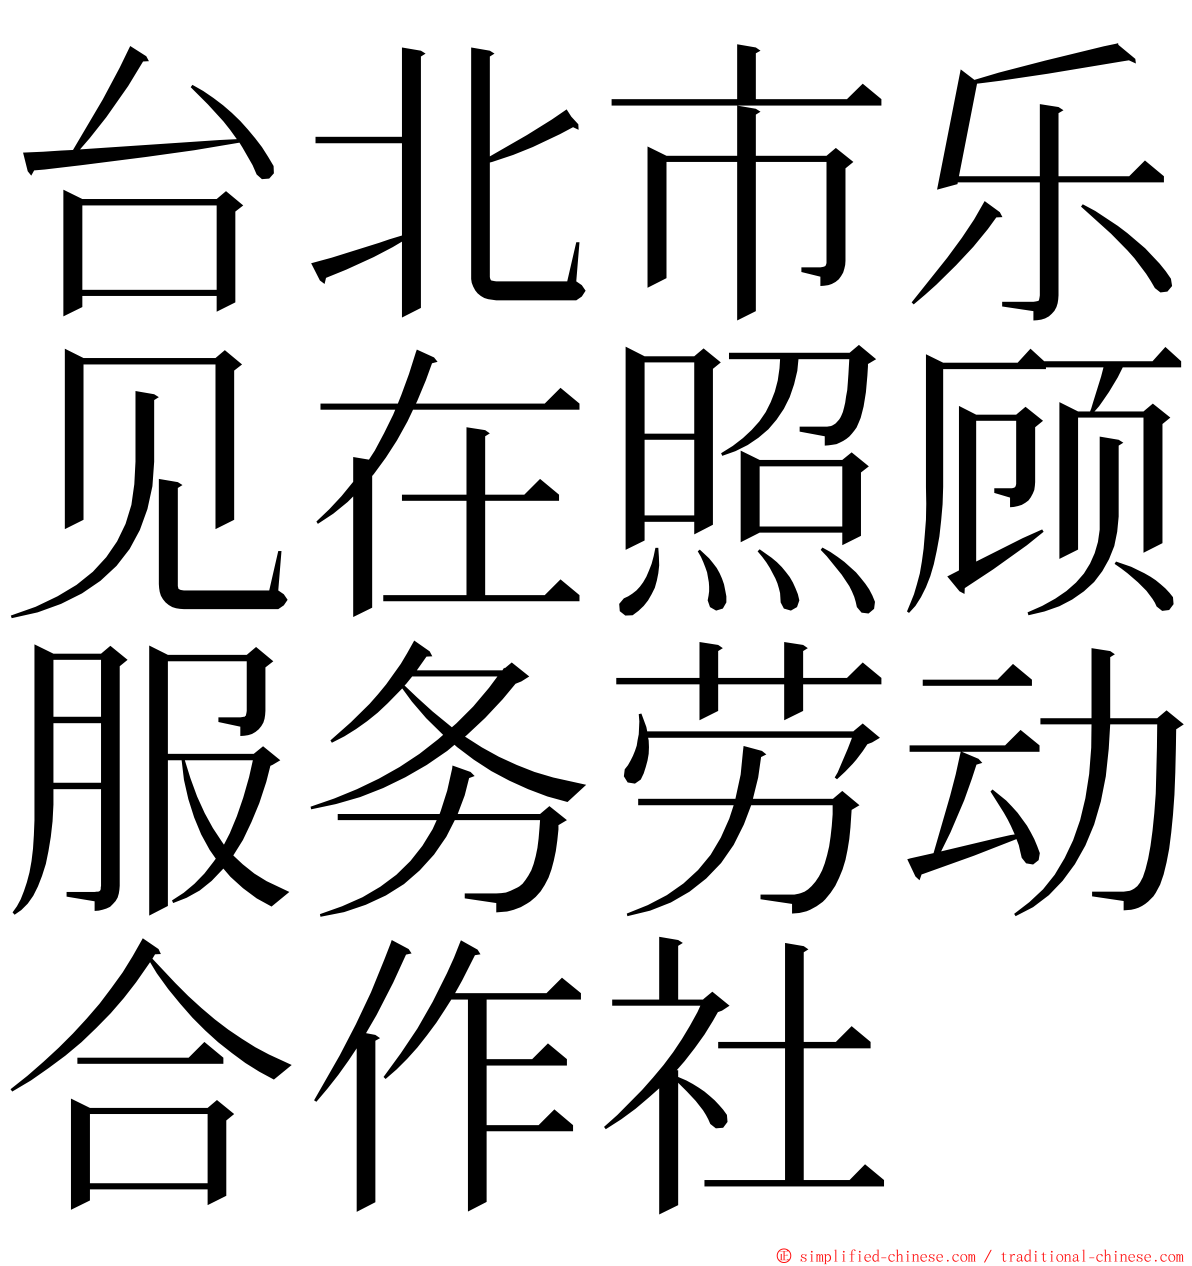 台北市乐见在照顾服务劳动合作社 ming font